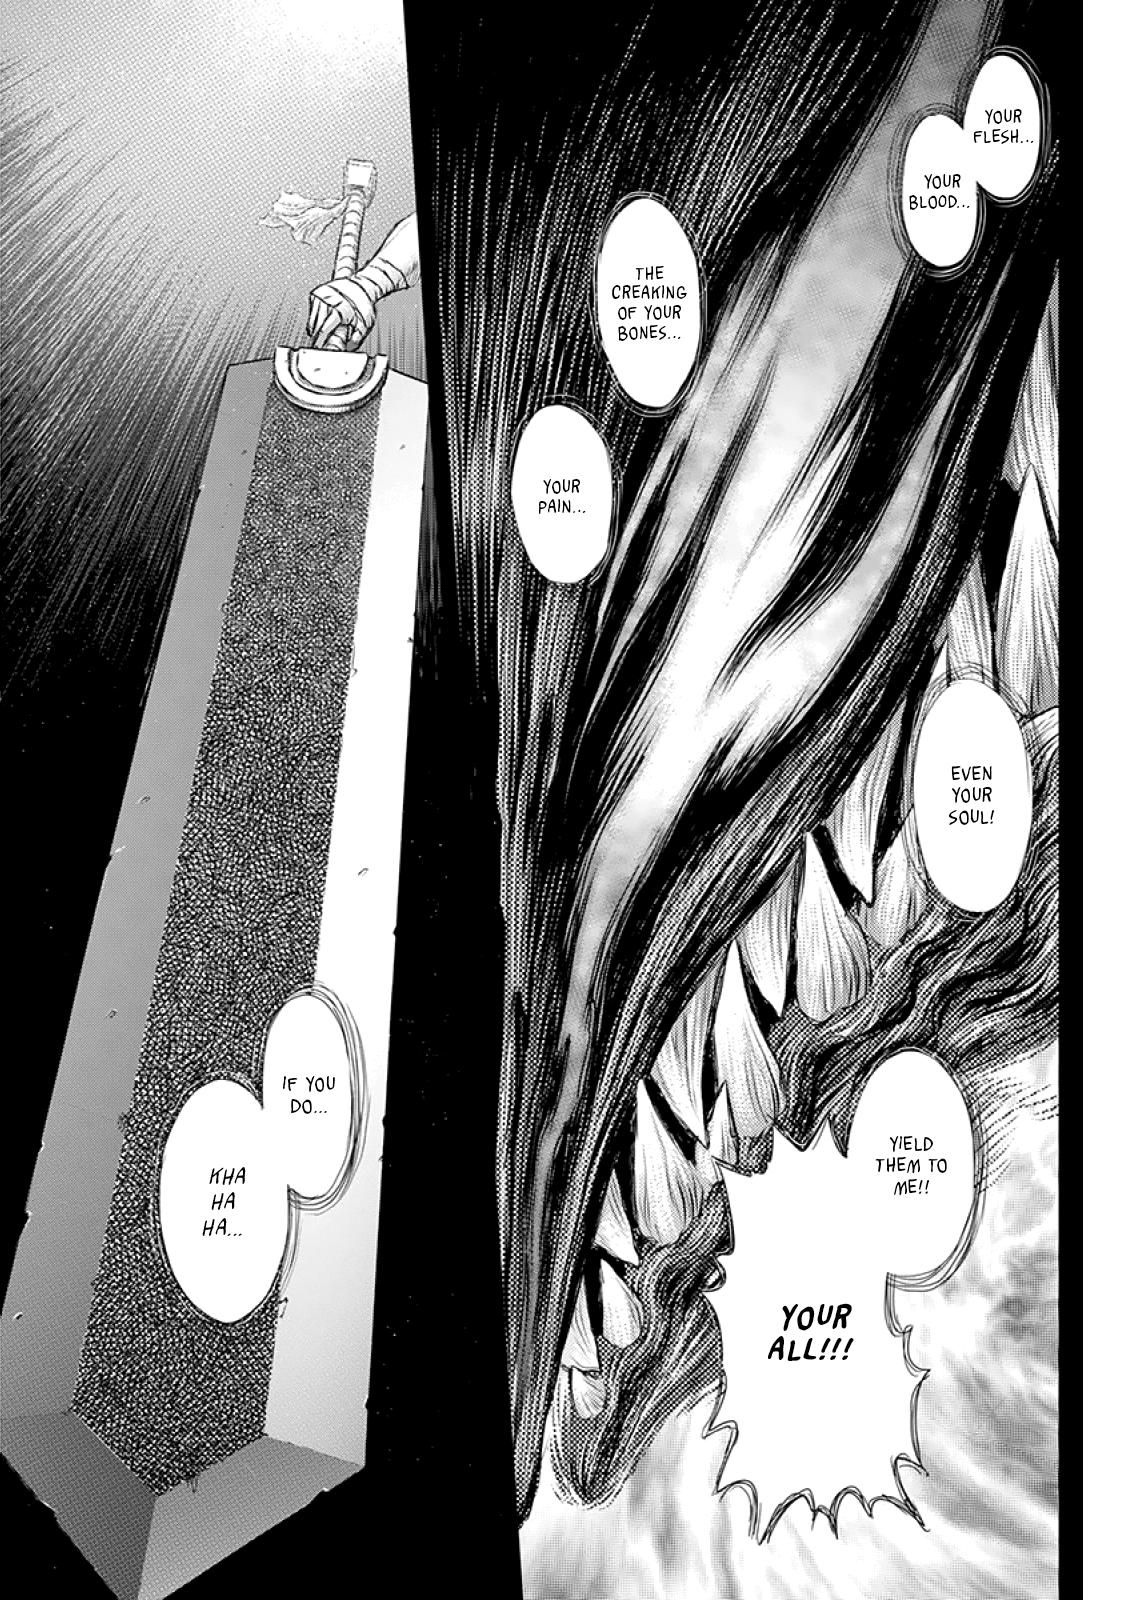 Berserk Manga Chapter 373 image 17